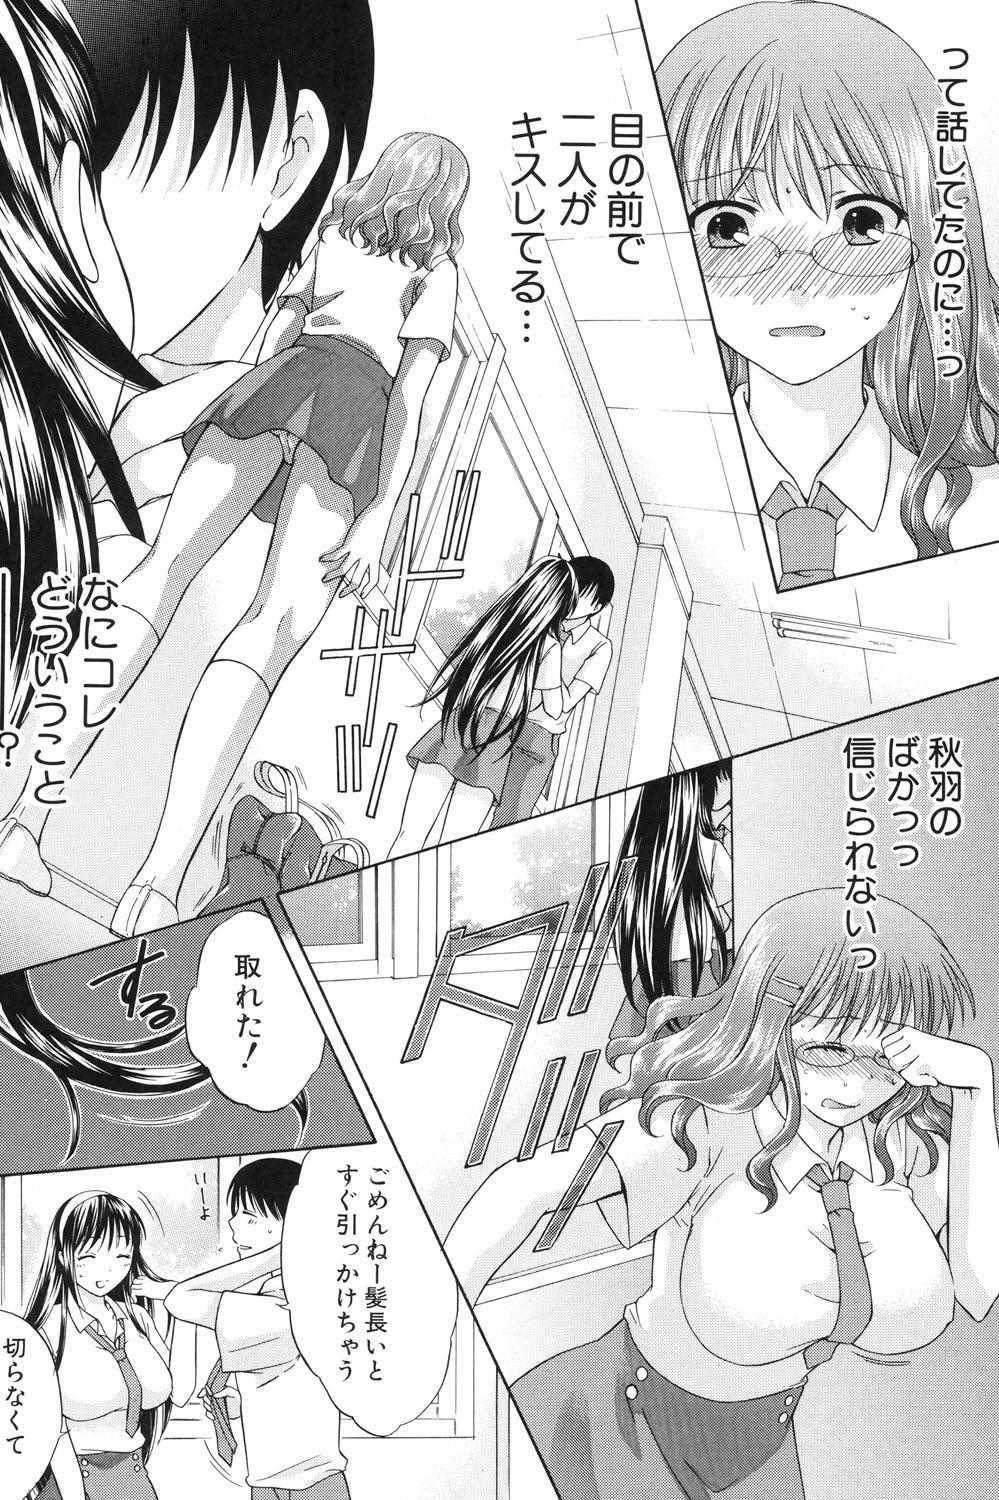 Amiga Hachigatu, Kanojo wa Uso wo tsuku. Nudist - Page 7